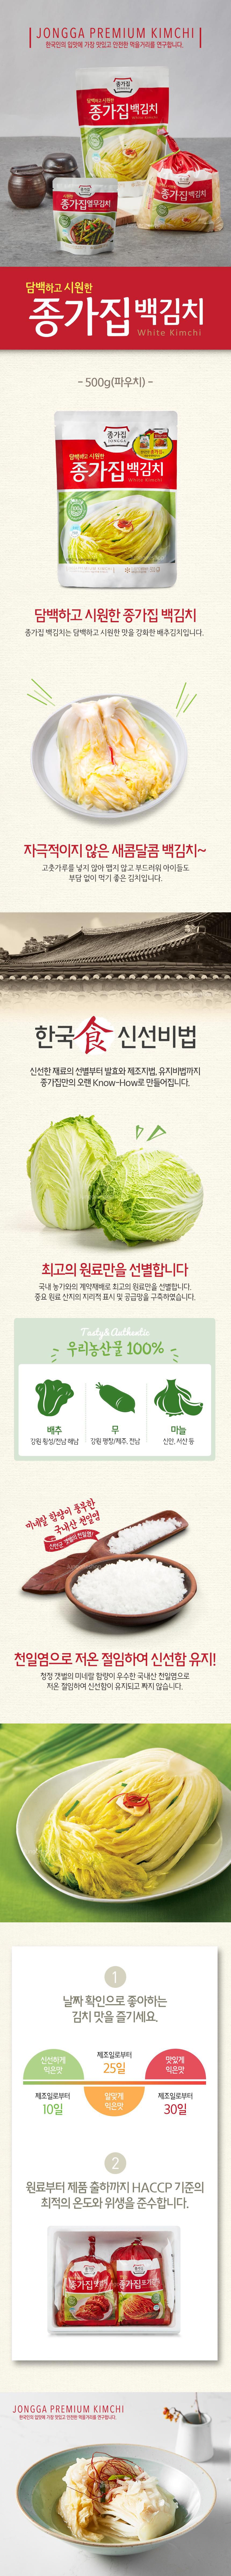 韓國食品-[Jongga] Baek Kimchi 500g